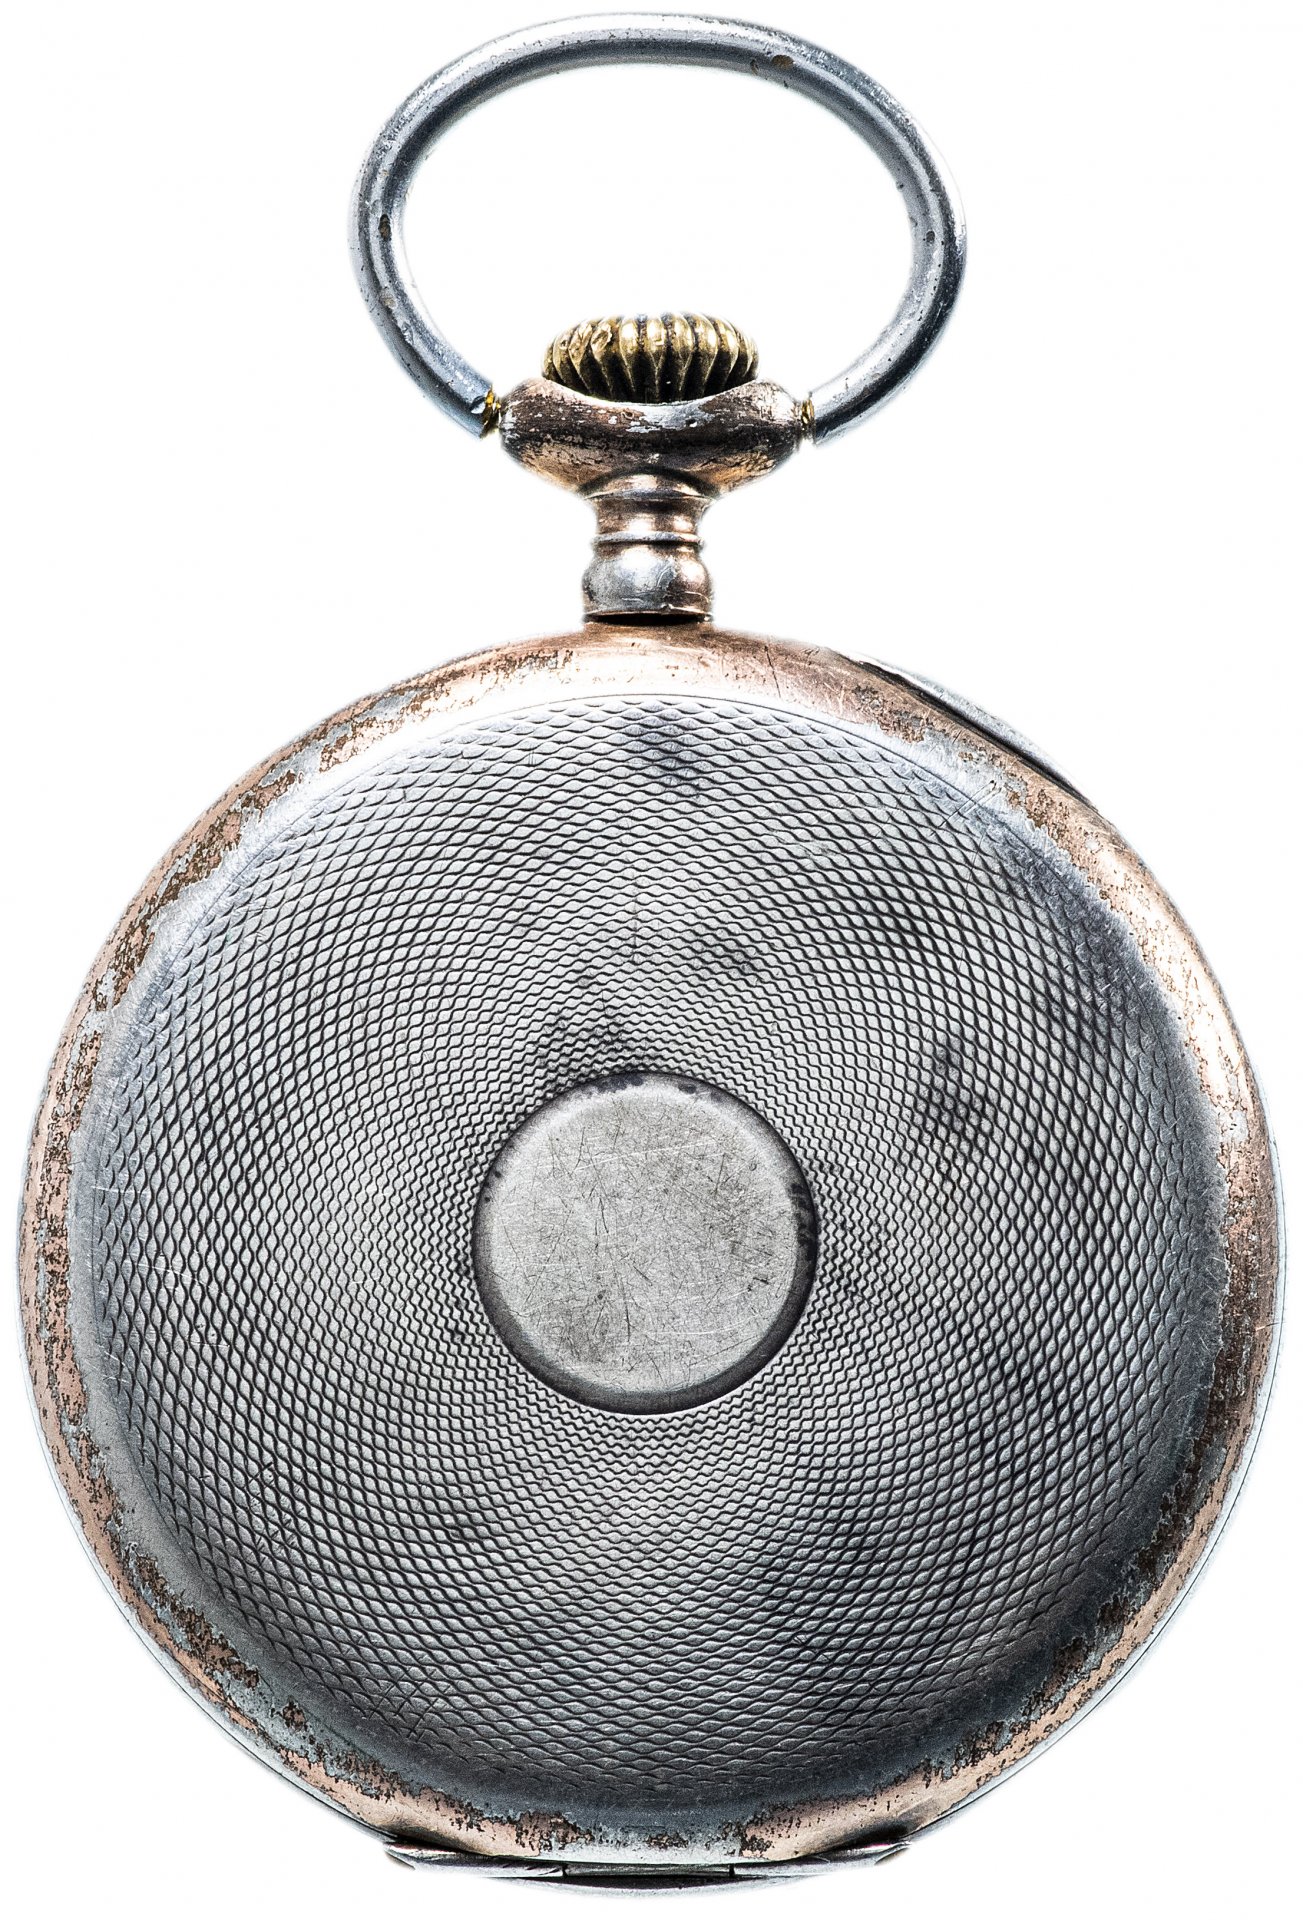 Карманные часы серебро. Карманные часы Junghans. Часы карманные Junghans клеймо 900. Германия Империя карманные часы Junghans 0,900. Карманные серебряные часы Юнганс.